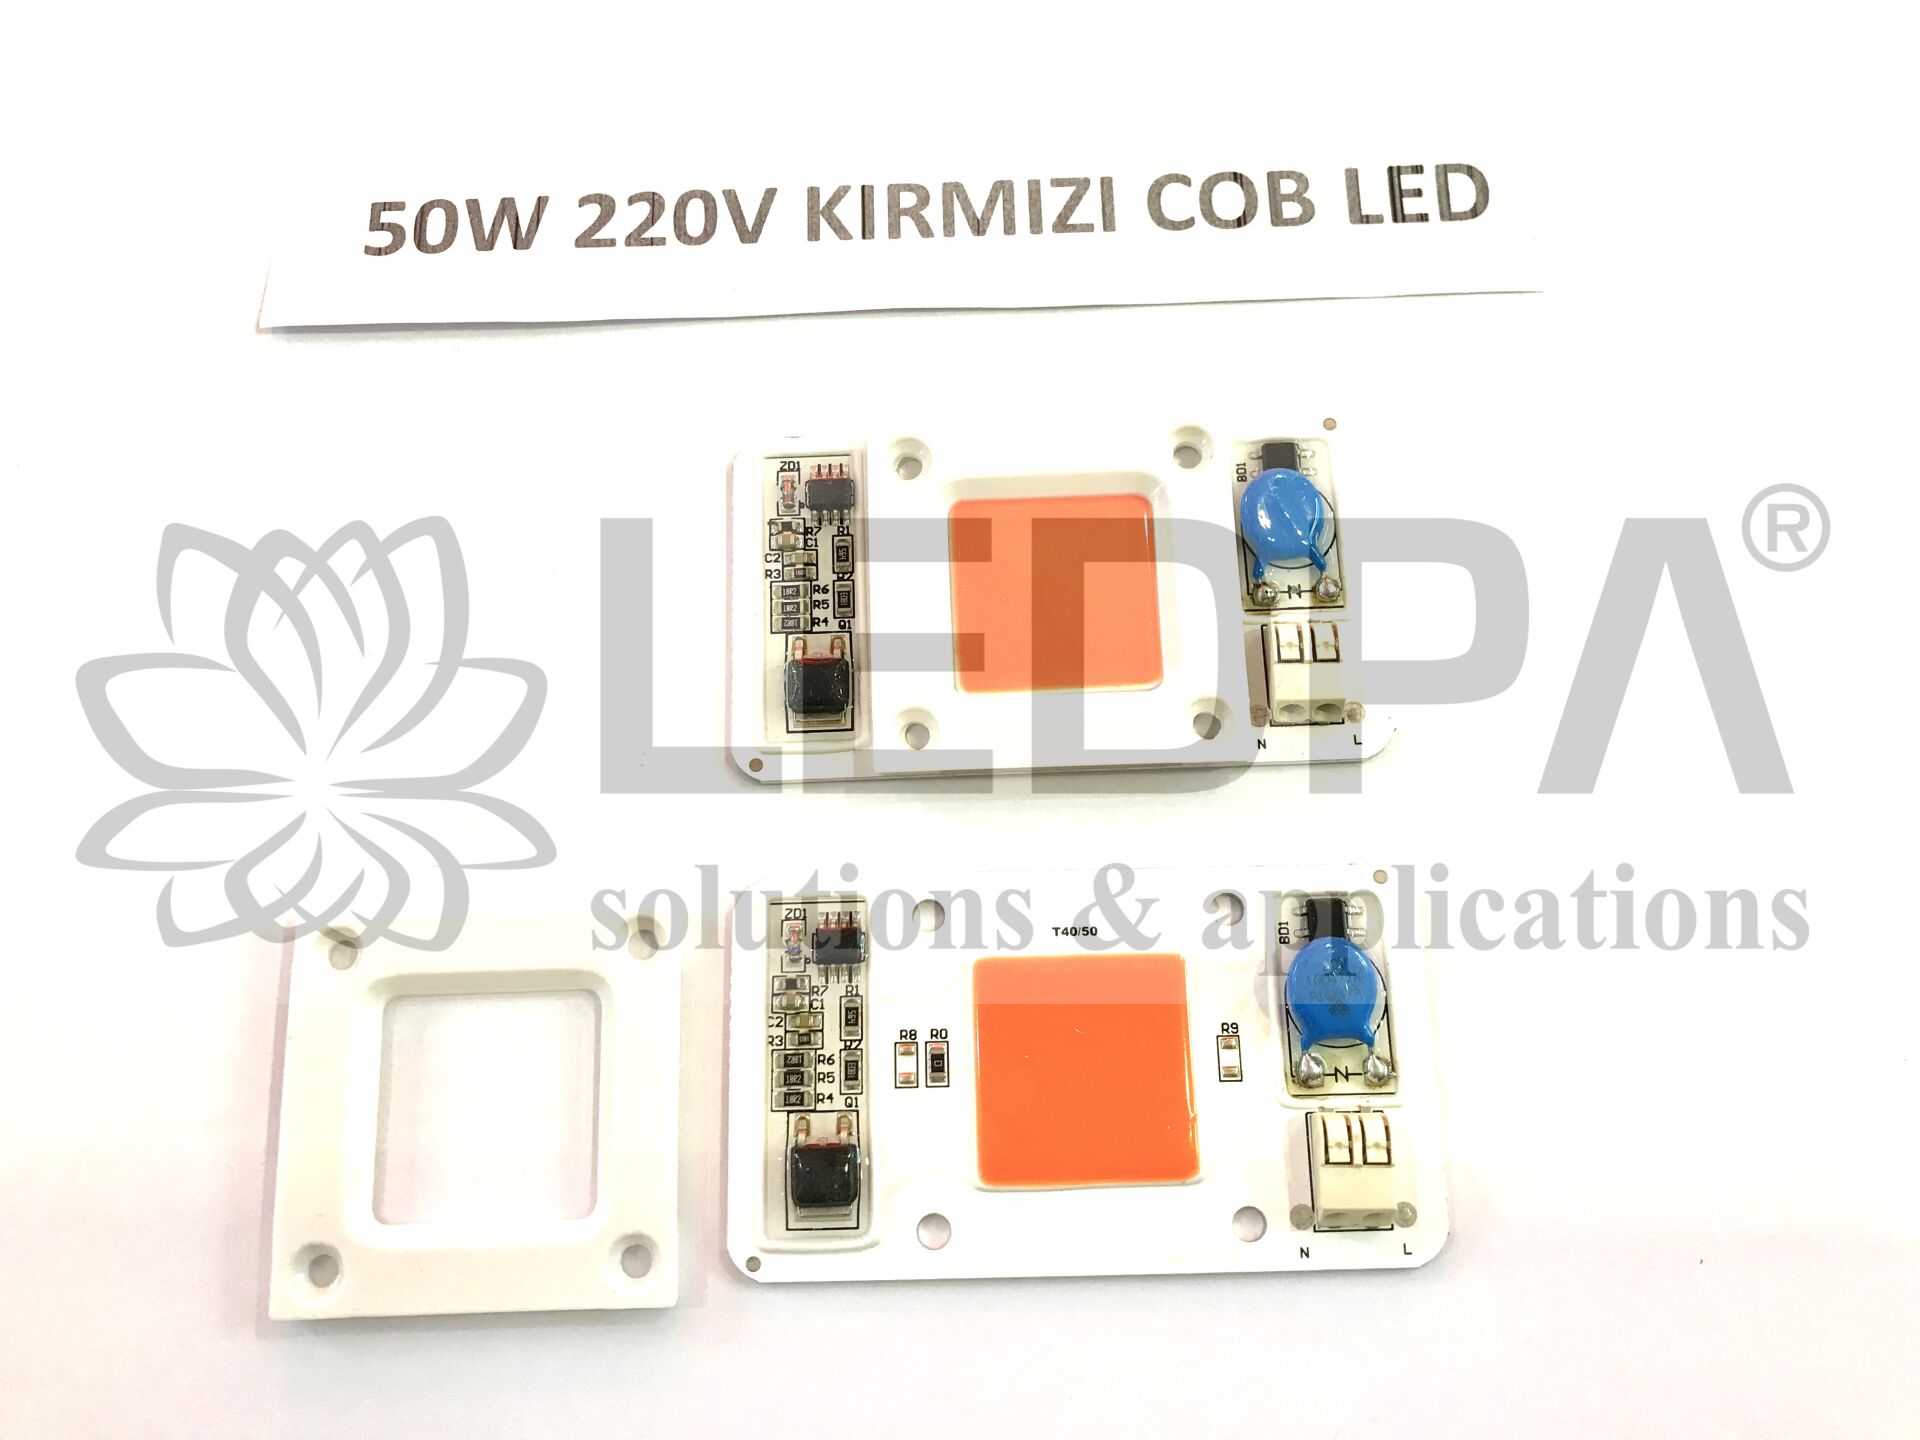 50W 220V KIRMIZI COB LED , 50W KIRMIZI LED